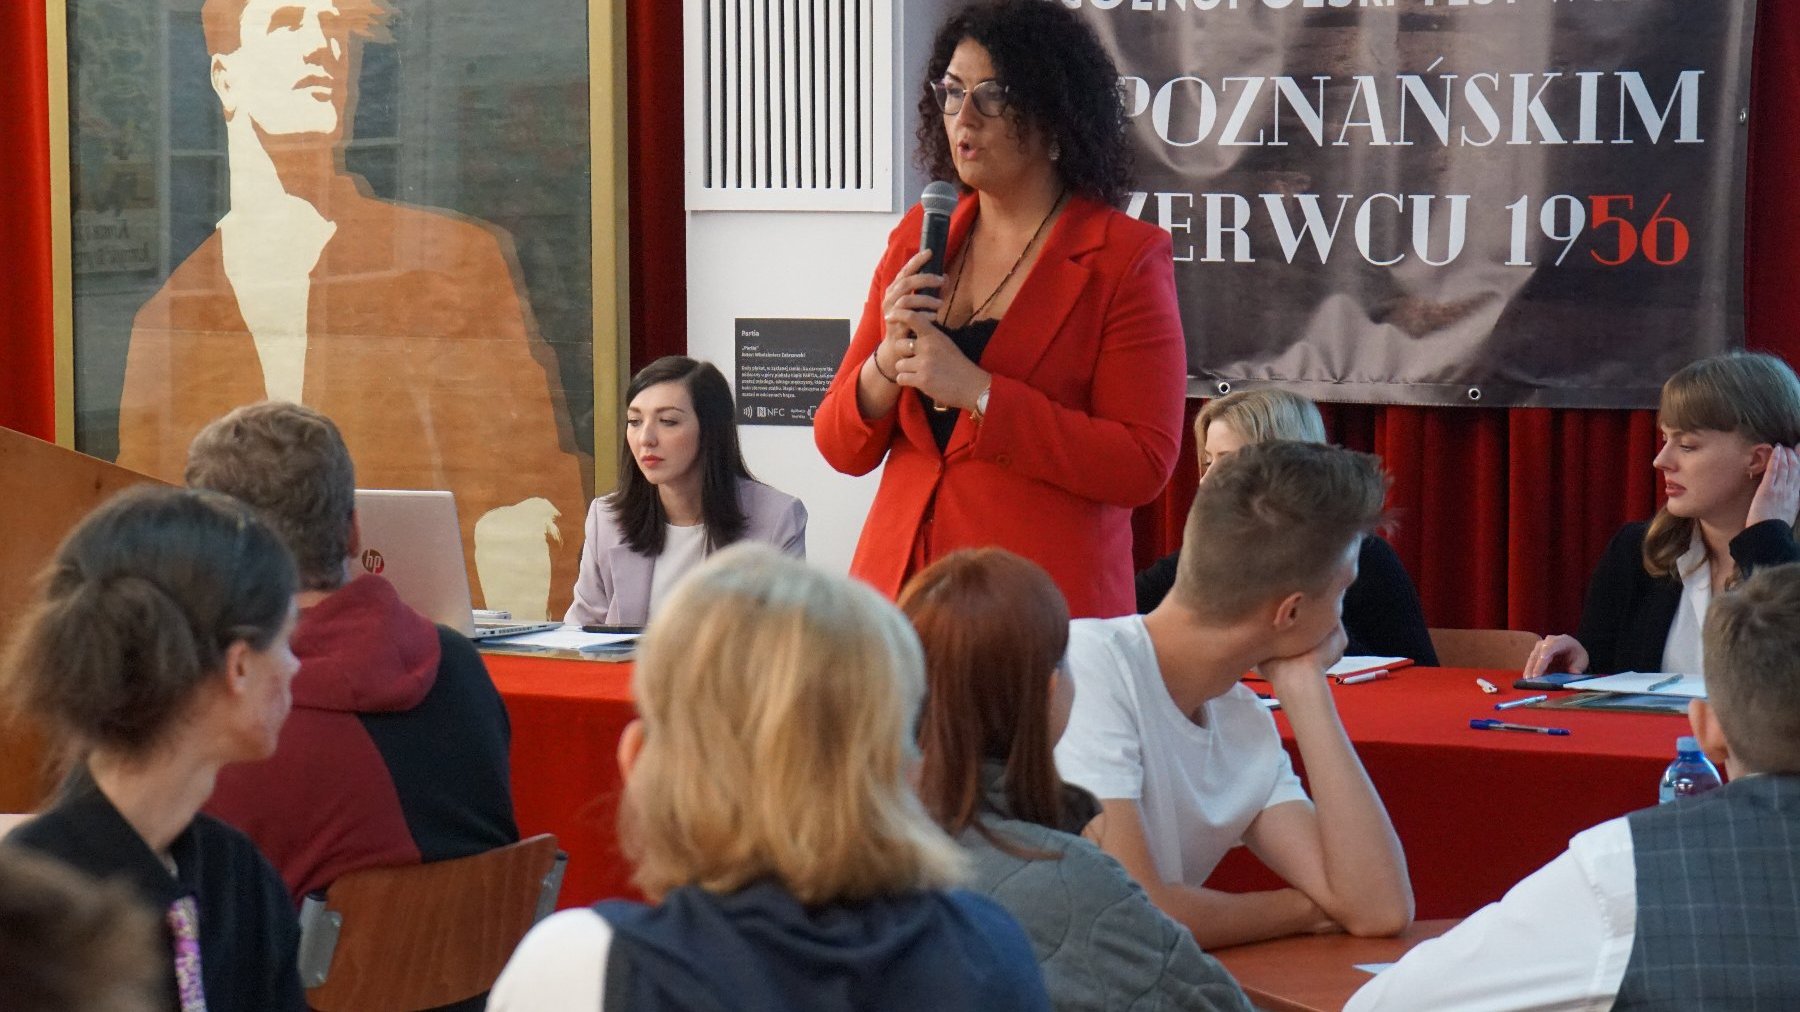 Kobieta z czarnymi włosami i w czerwonej marynarce przemawia przez mikrofon. Przed nią siedzą uczniowie. Za kobietą siedzą 3 kobiety. W tle plakat konkursowy.